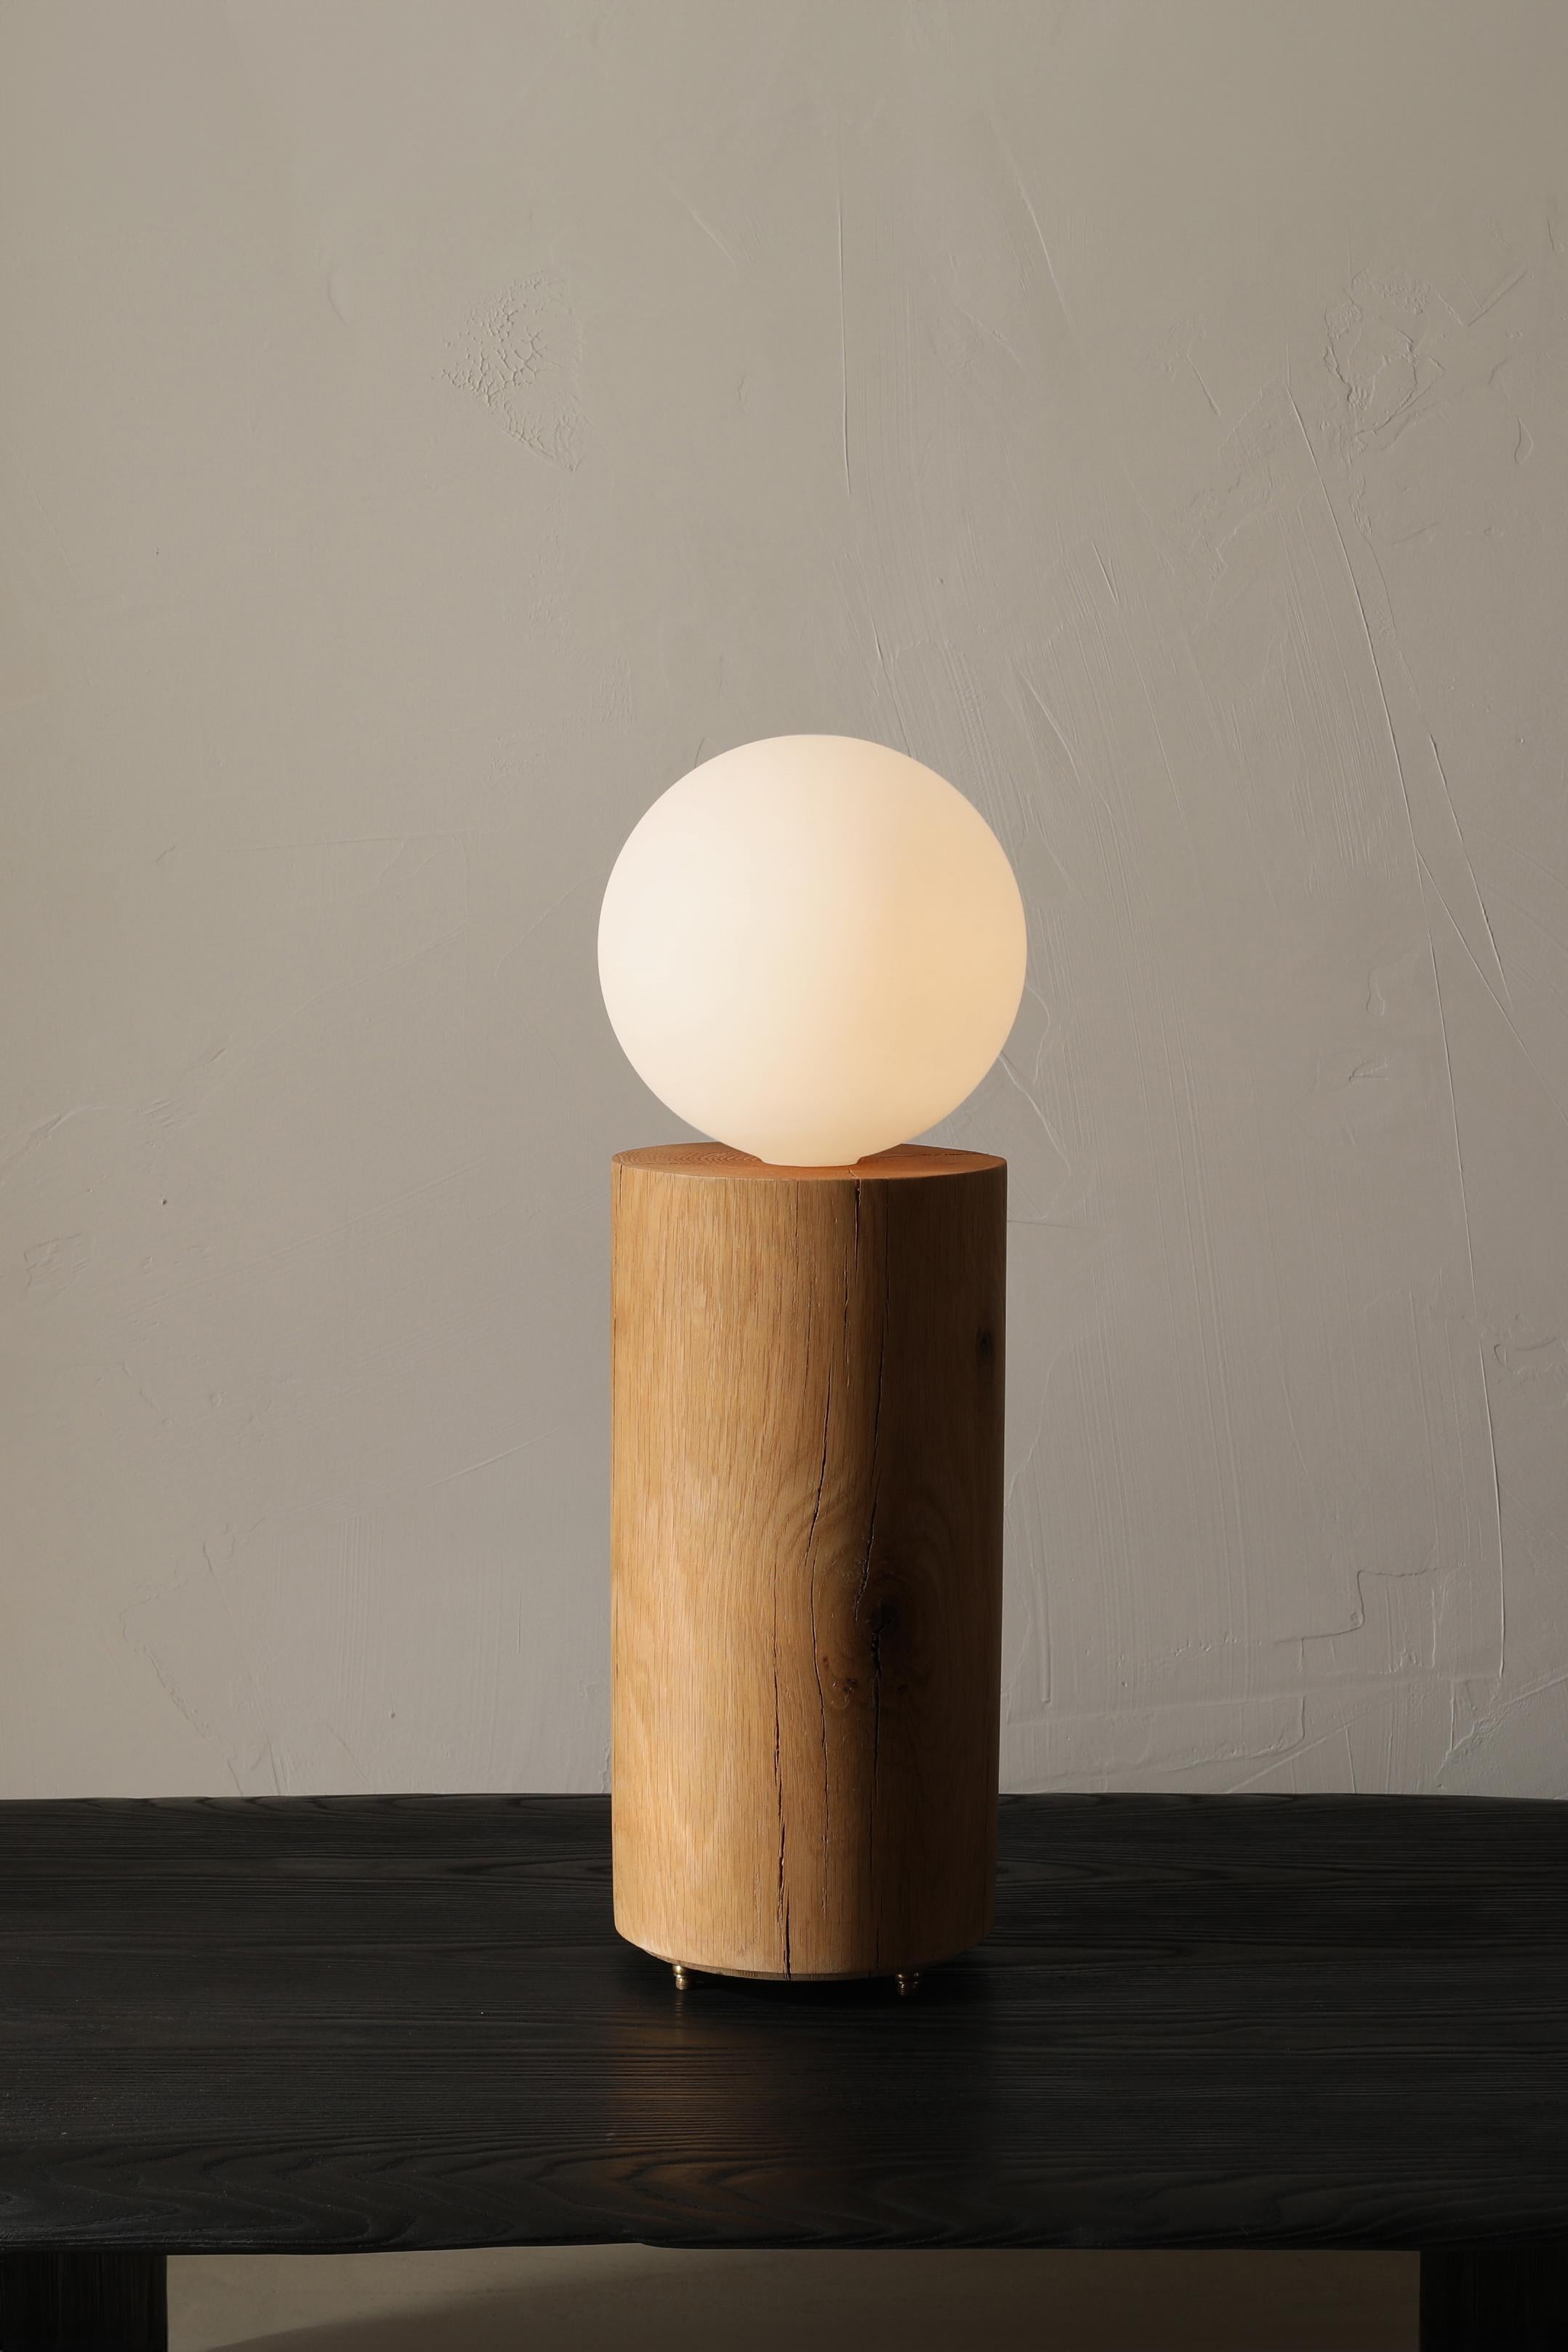 La lampe Revolve est une lampe de table en chêne massif dotée d'une grande ampoule à globe dépoli. La lampe repose sur trois pieds en bronze et s'allume sur le cordon à l'aide d'un variateur d'intensité.

Cette pièce est issue de la collection